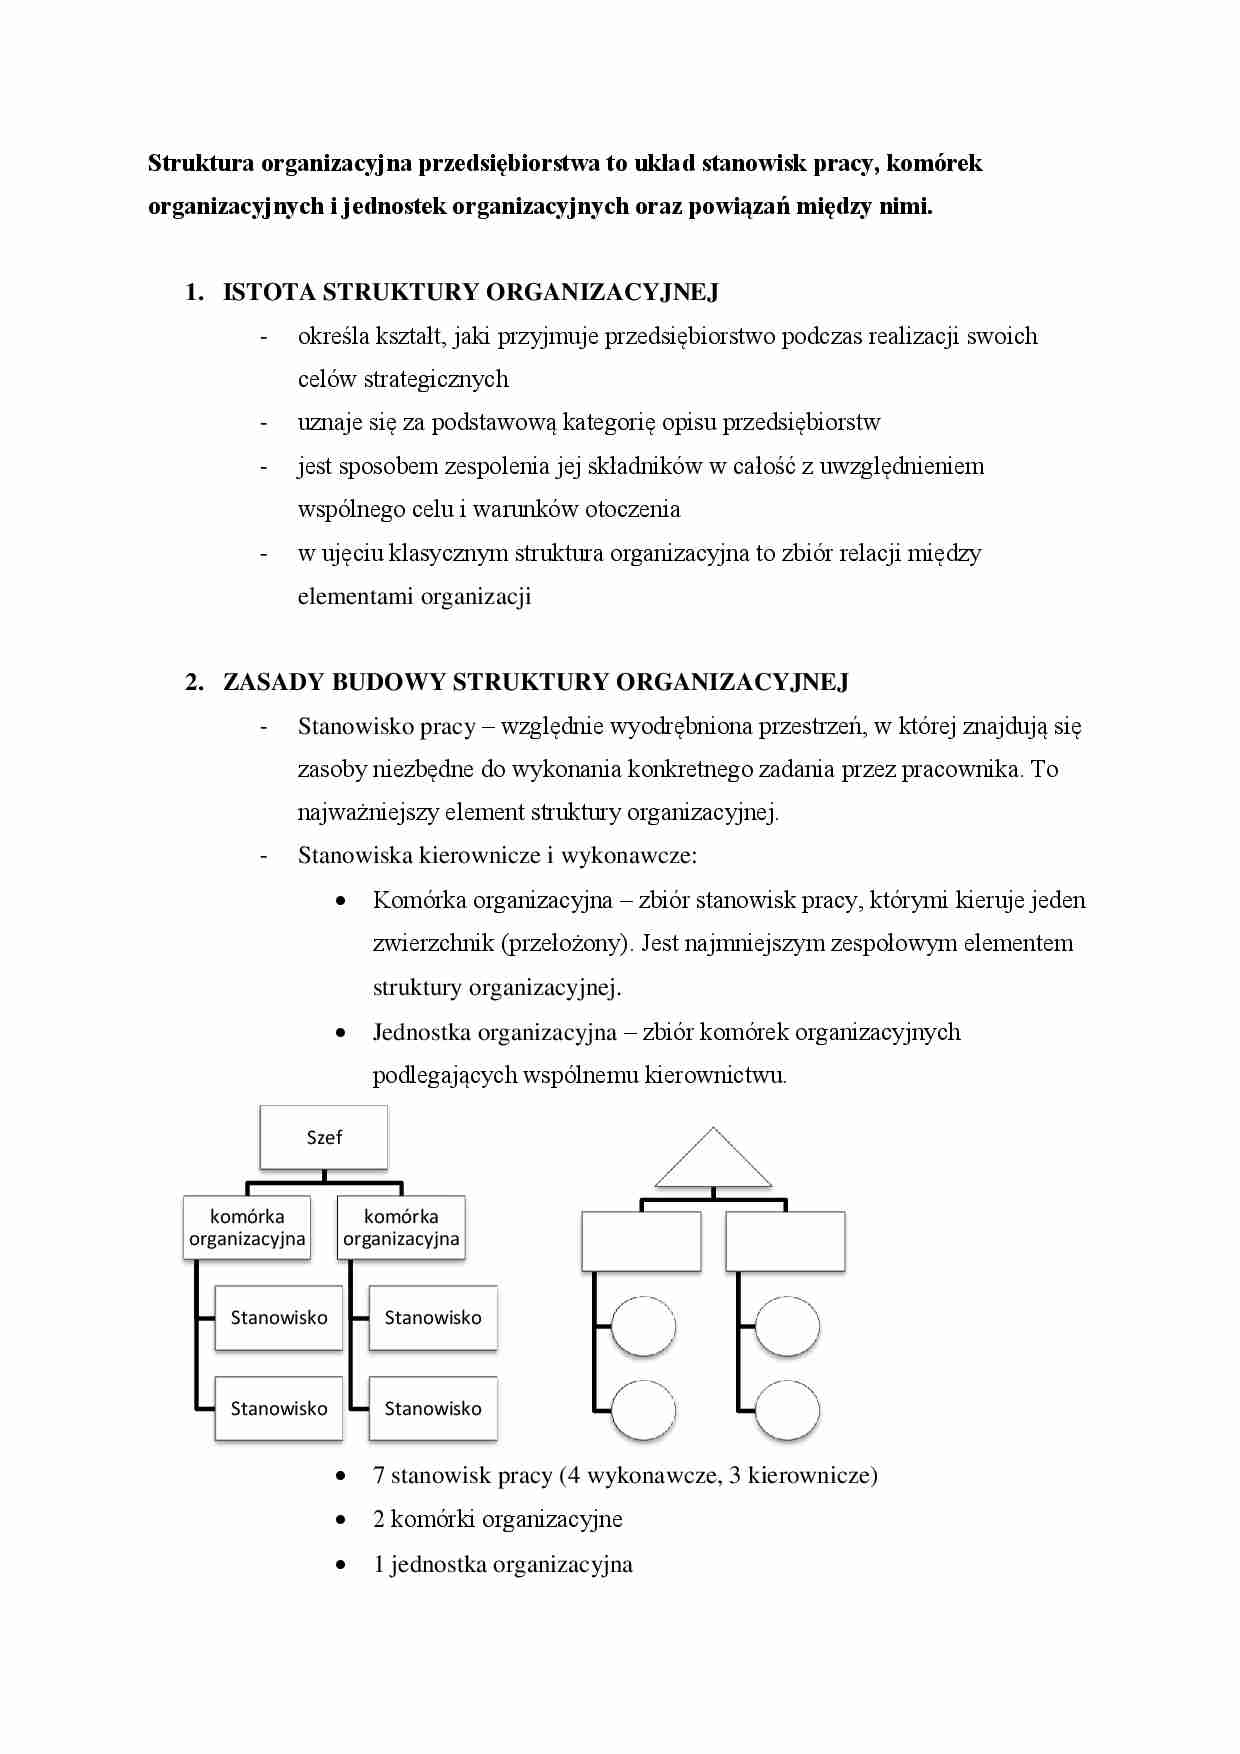 Struktura organizacyjna przedsiębiorstwa - strona 1